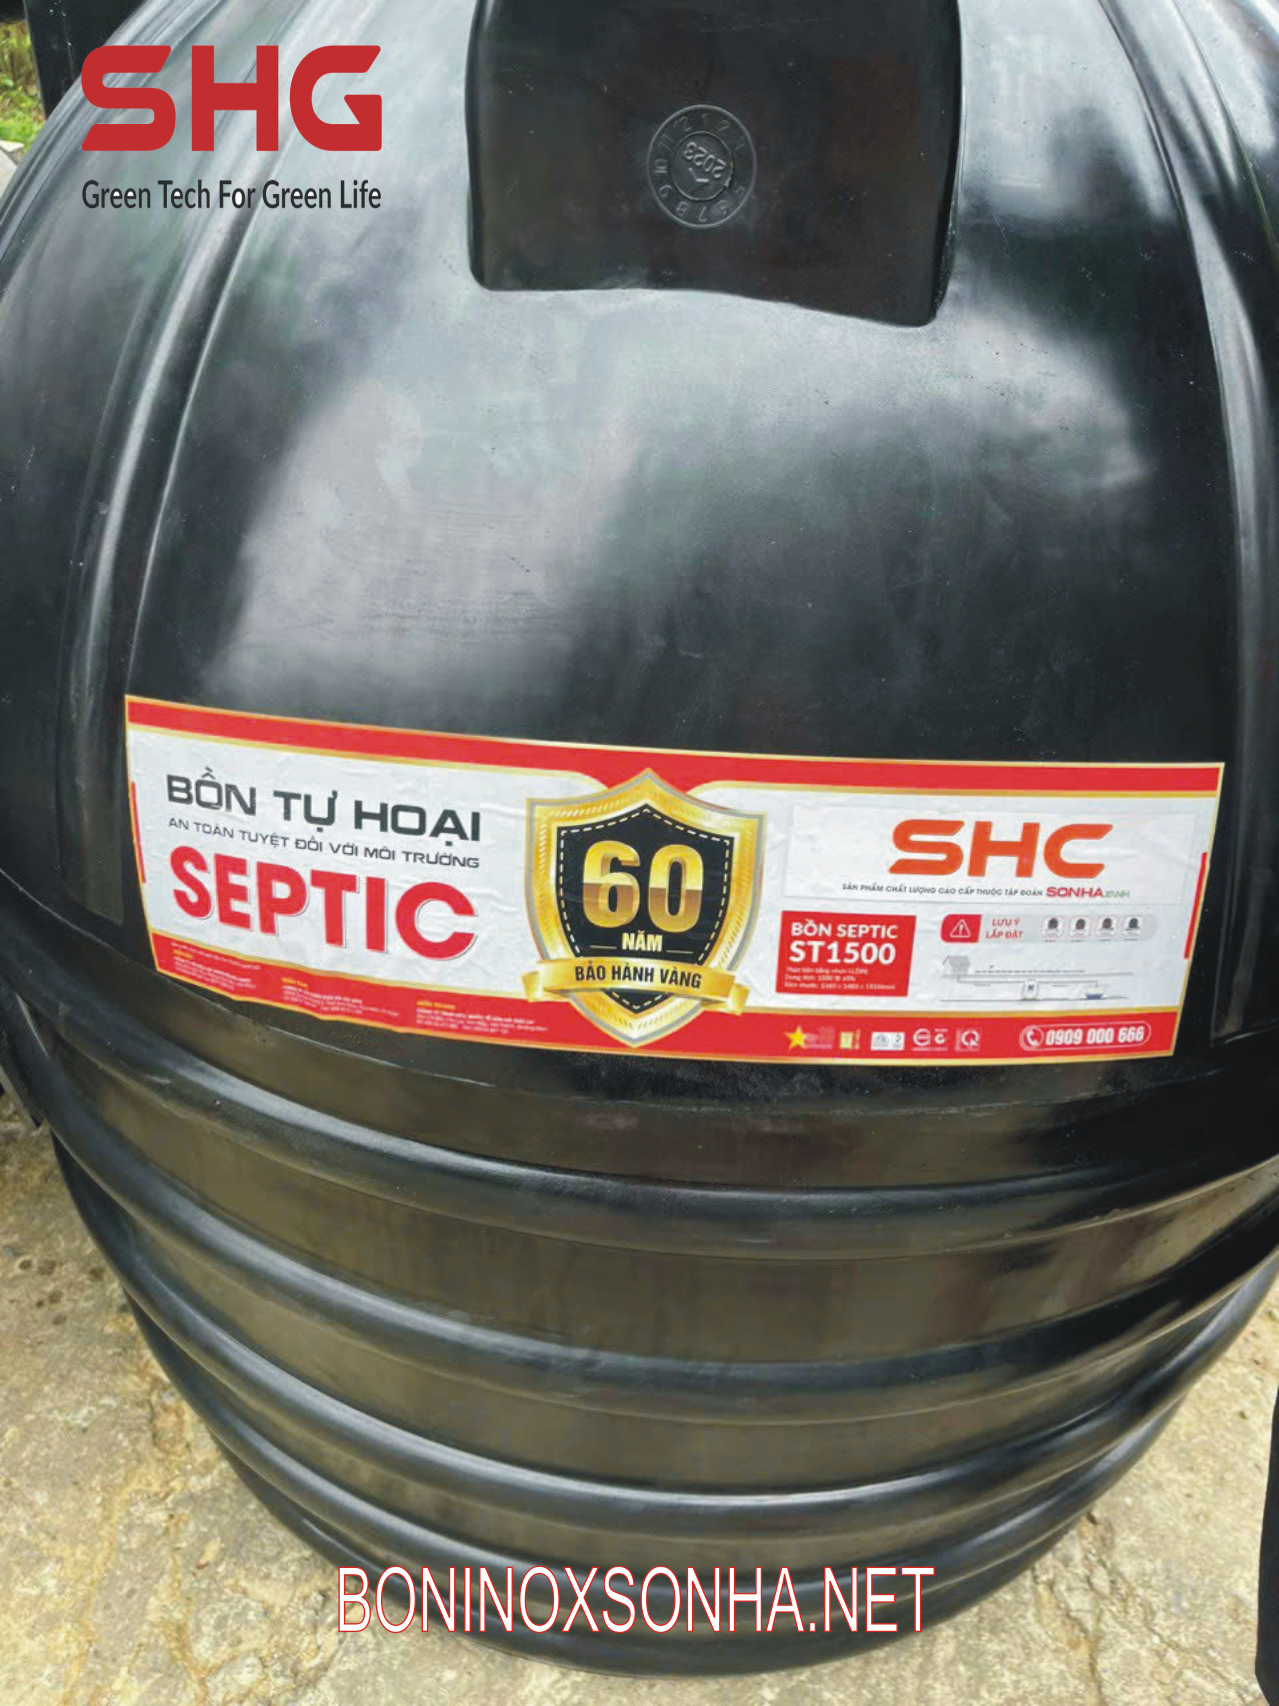 Bảo hành 60 năm bể septic SHG bể 1500 lít